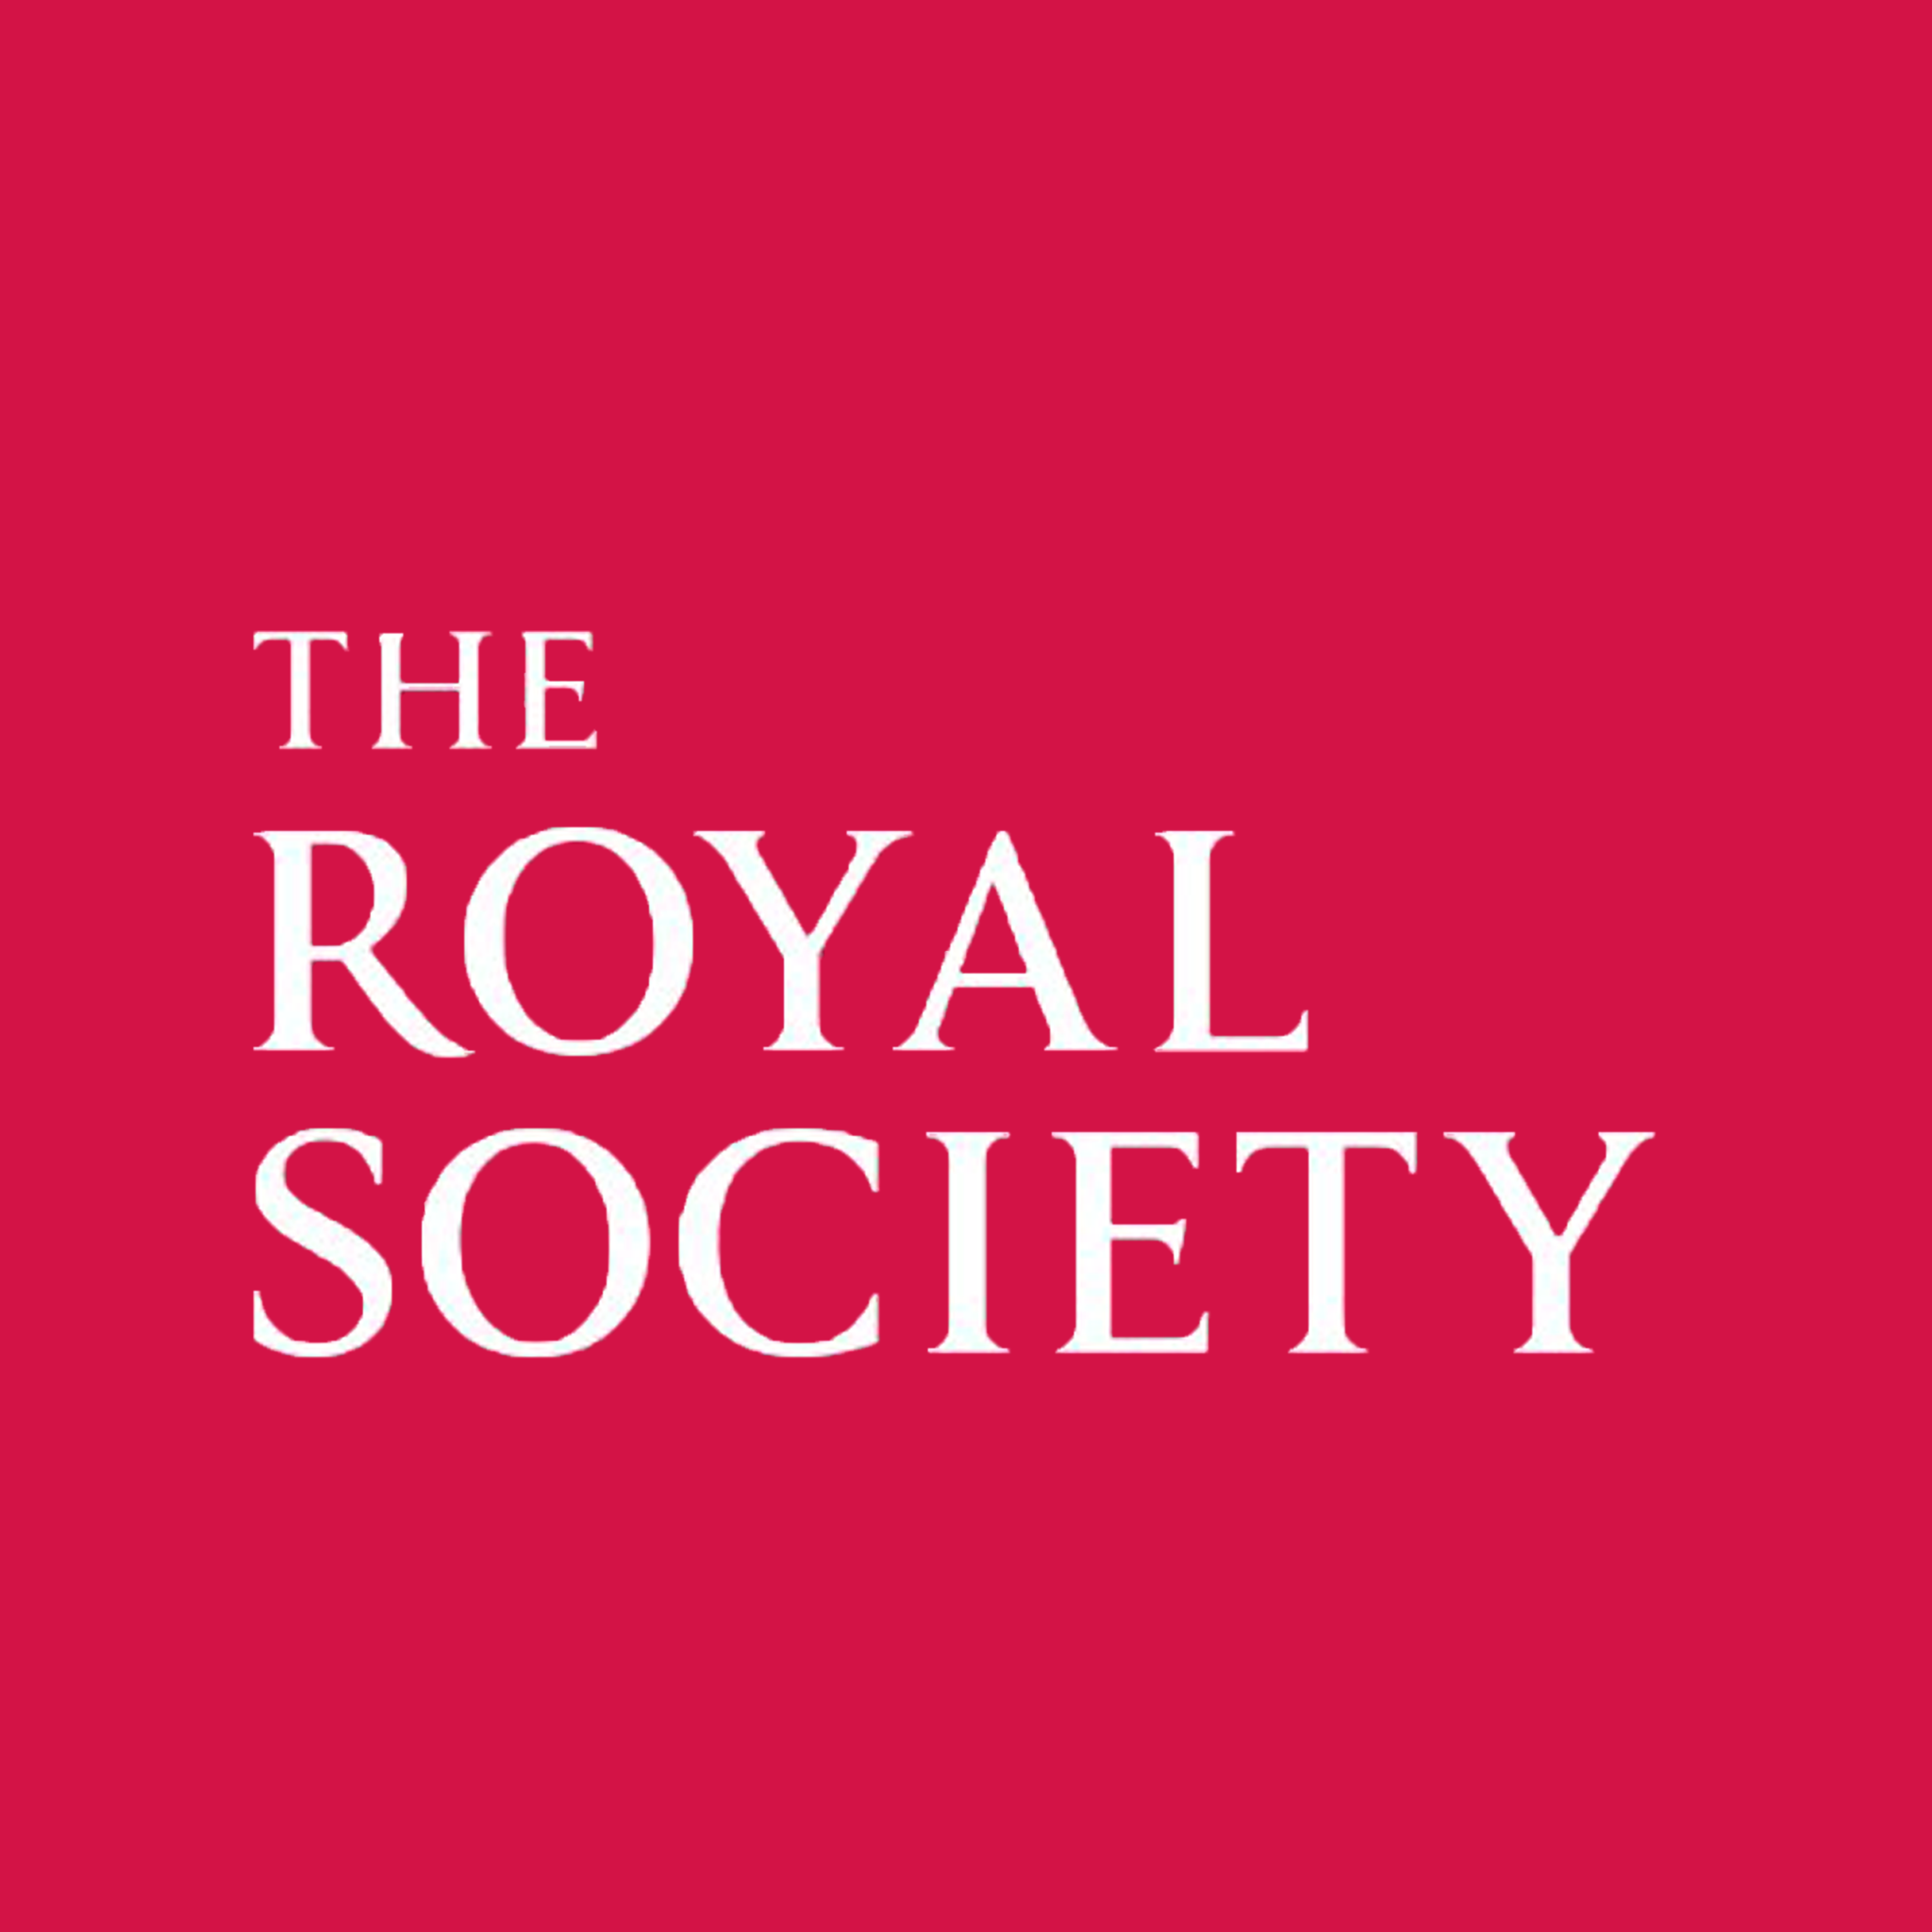 Royal society. The Royal Society. The Royal Society Publishing. The Royal Society Publishing logo. Лондонское Королевское общество.